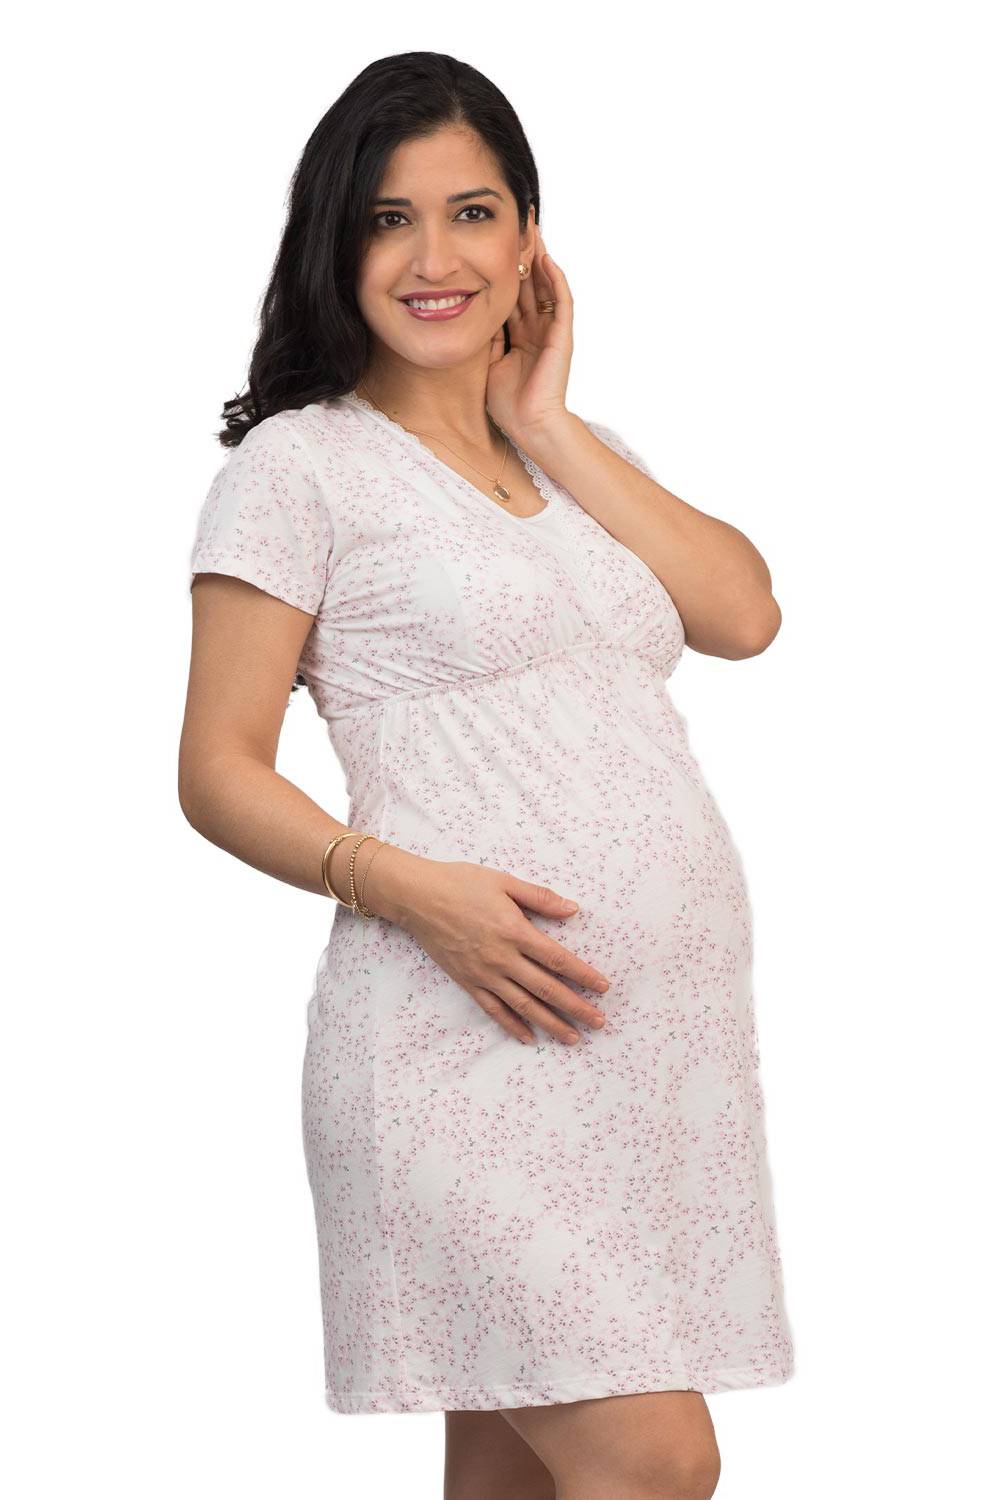 Athina Mathernity – Ropa para Embarazadas en Perú, Ropa de Maternidad y  Lactancia